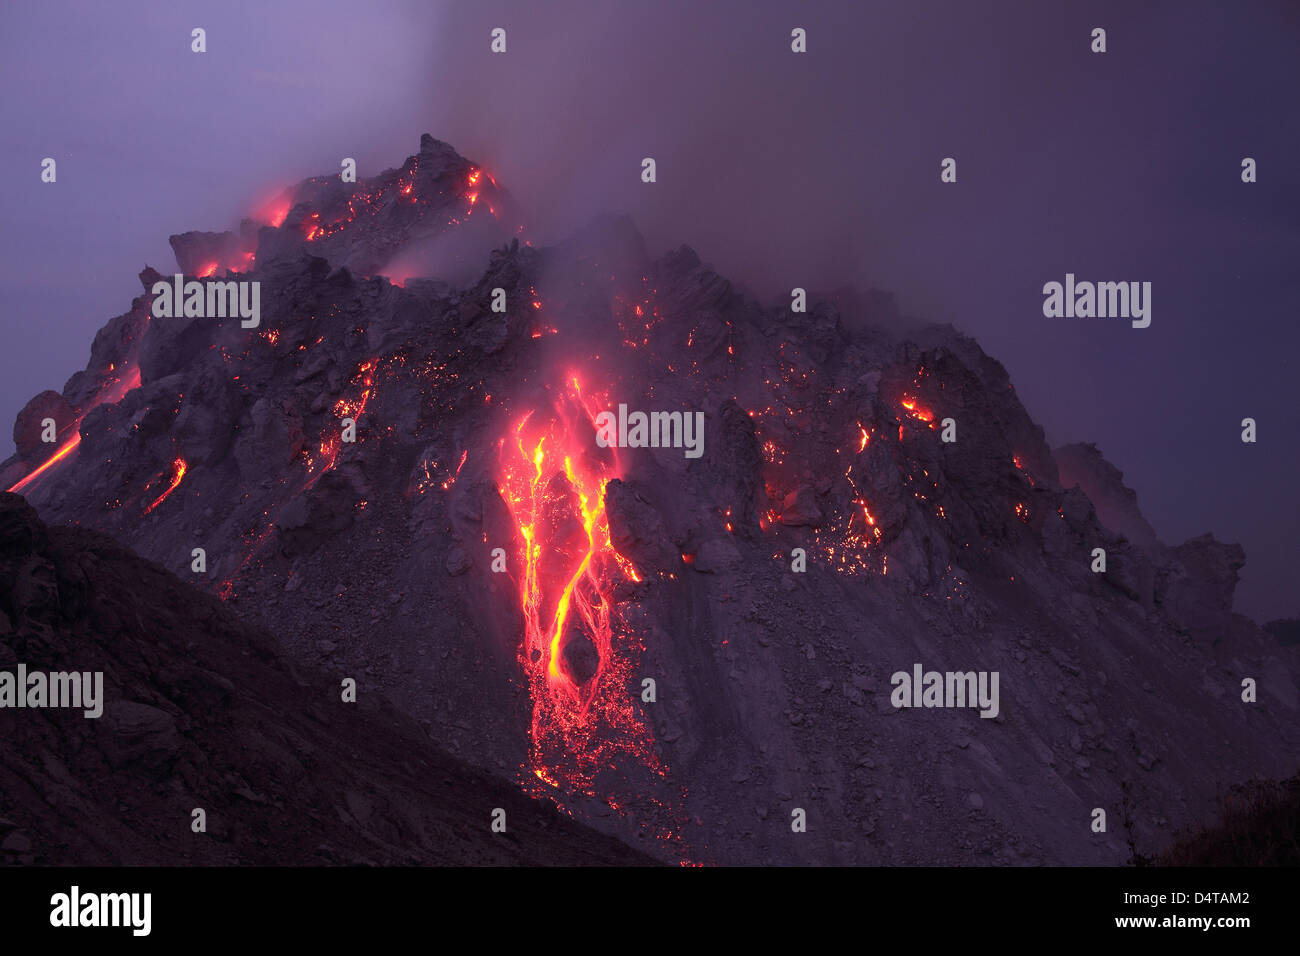 30 novembre 2012 - incandescente Rerombola duomo di lava incandescente con deposito di caduta massi, Paluweh vulcano, Flores, Indonesia. Foto Stock